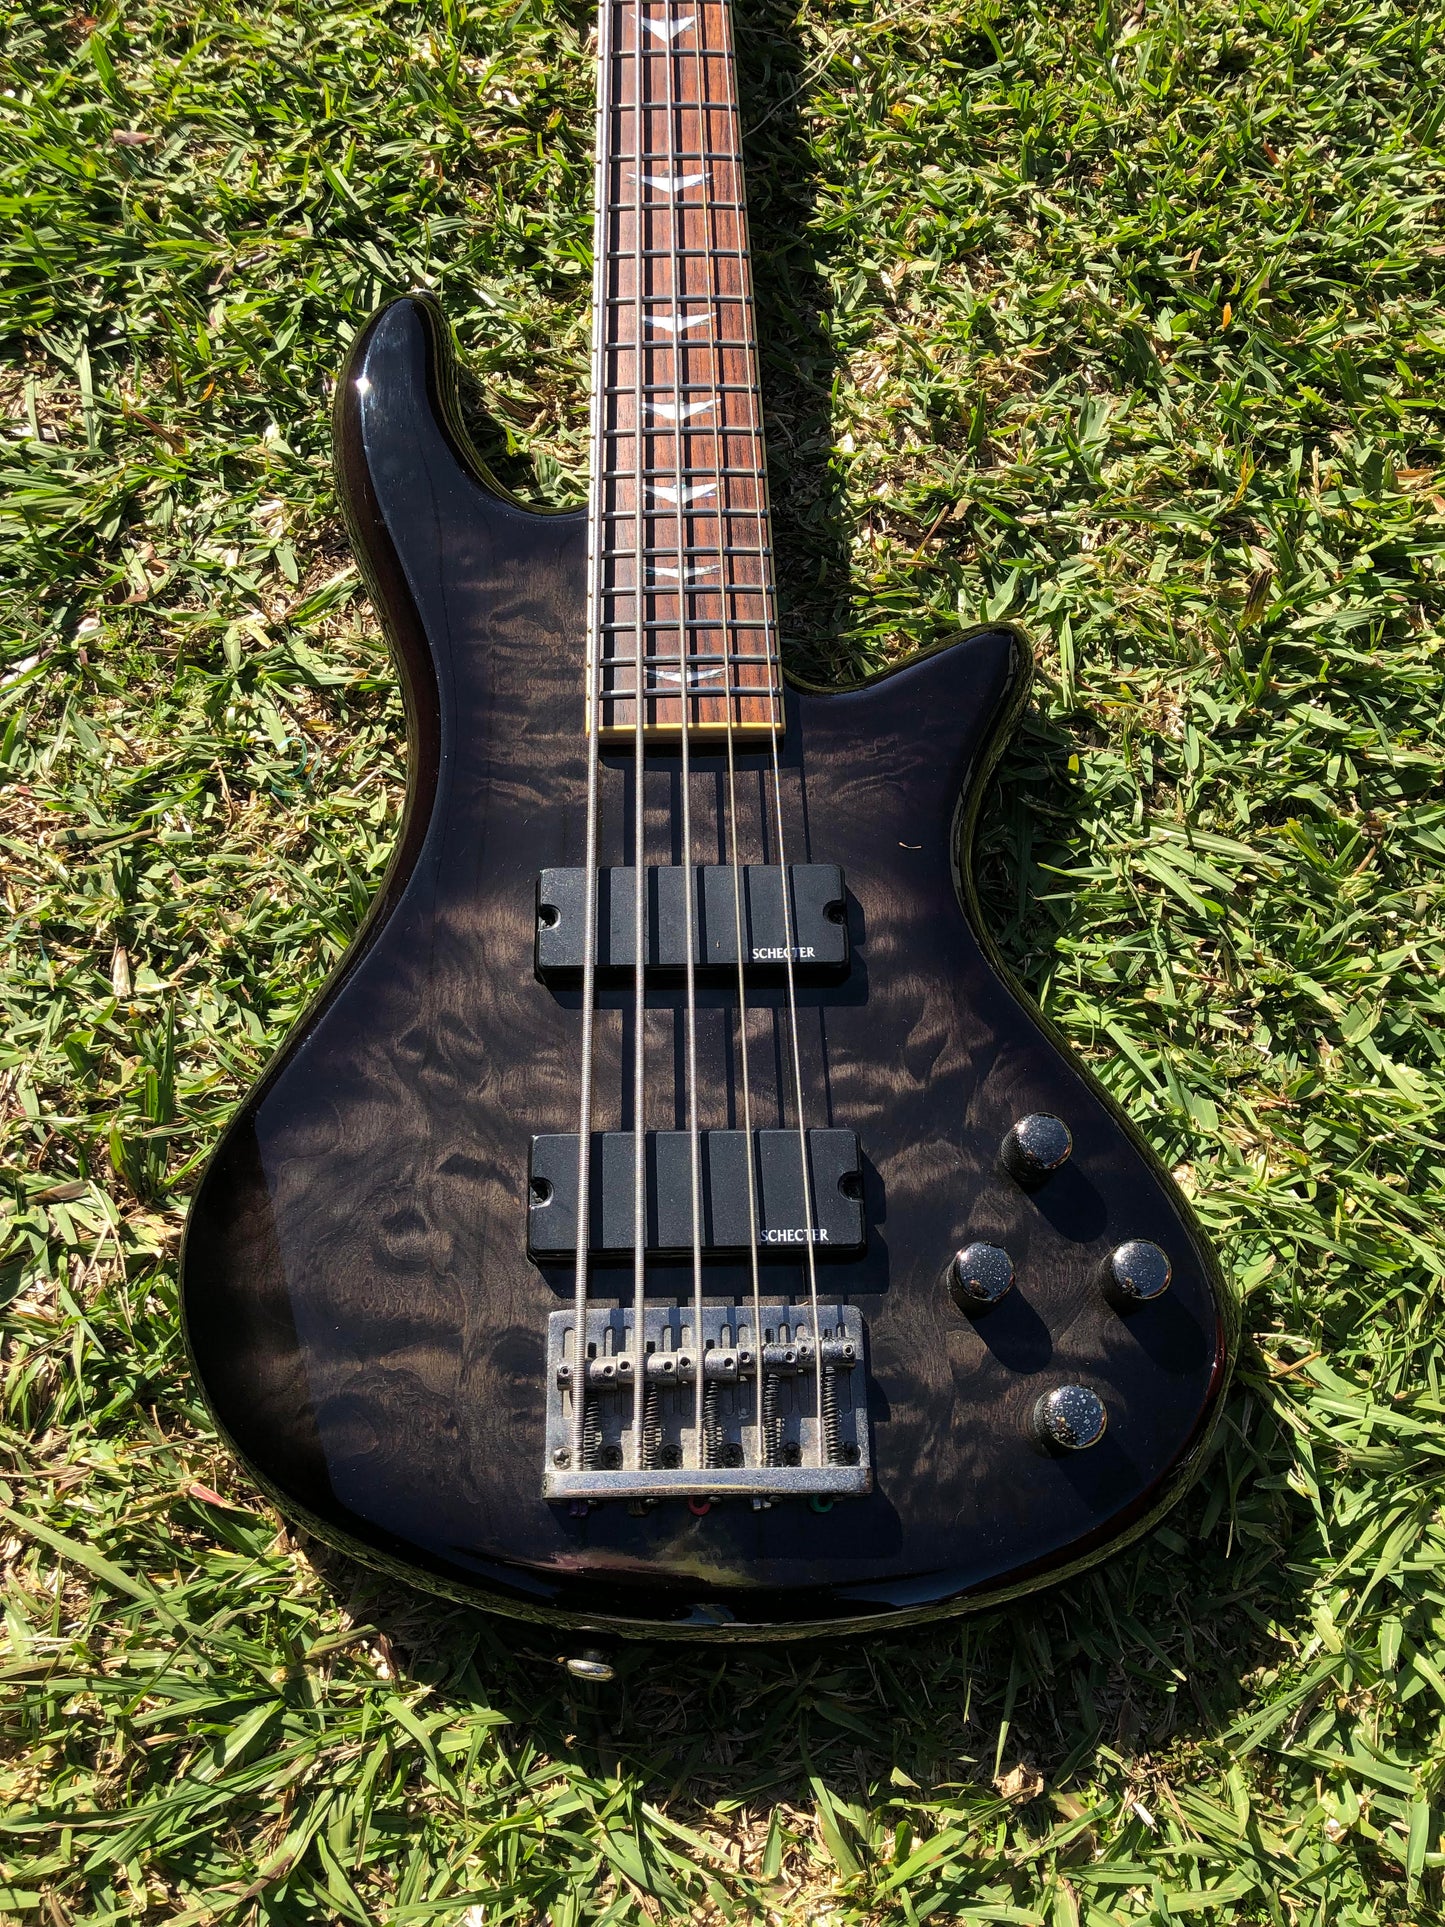 Schecter Stiletto Extreme 5 String Bass